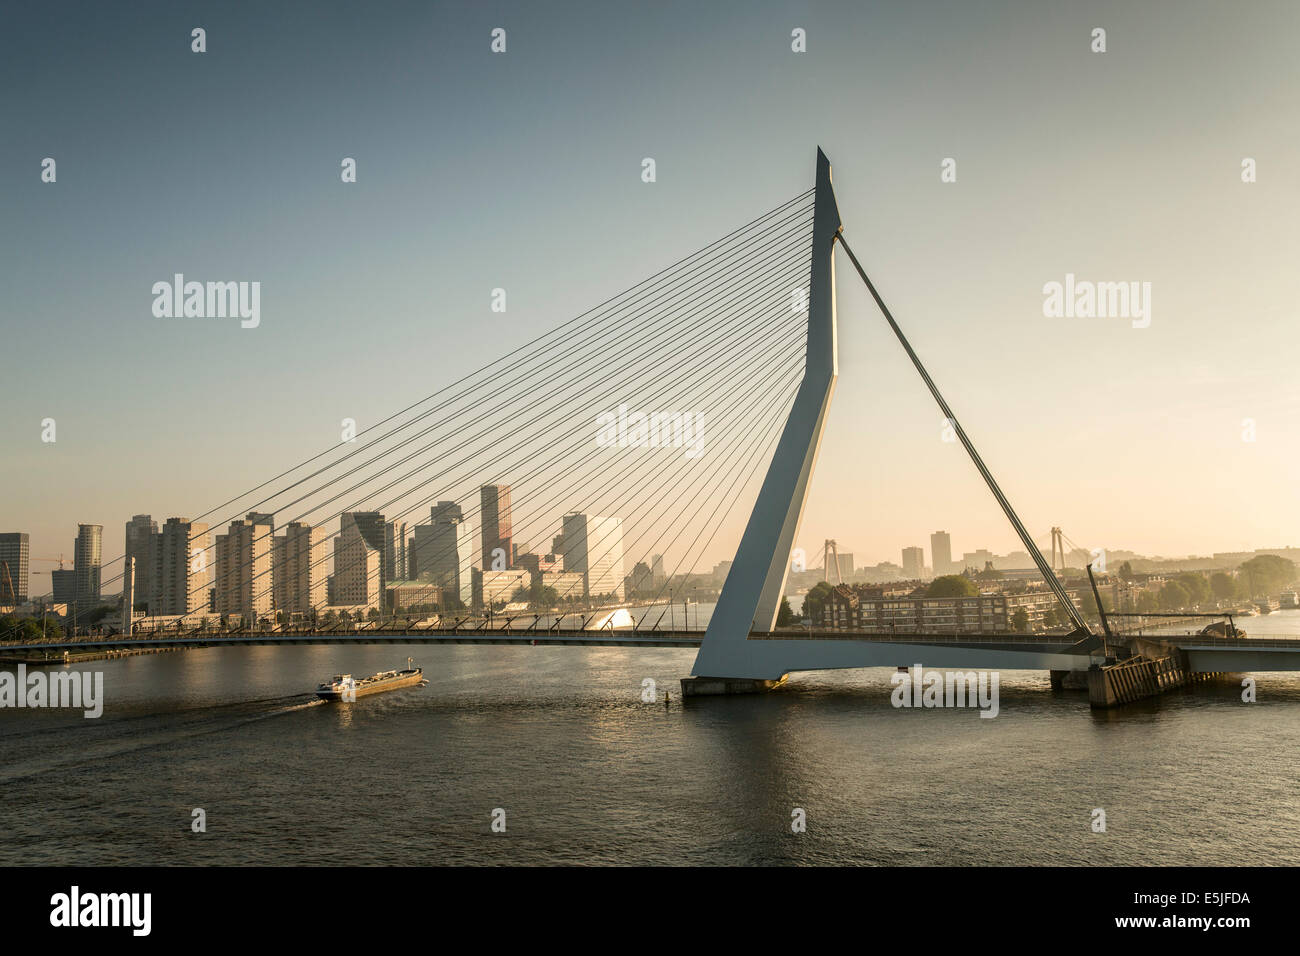 Niederlande, Rotterdam, Erasmus-Brücke. Sunrise. Blick vom Kreuzfahrtschiff MS Rotterdam. Binnenschifffahrt tanker Stockfoto